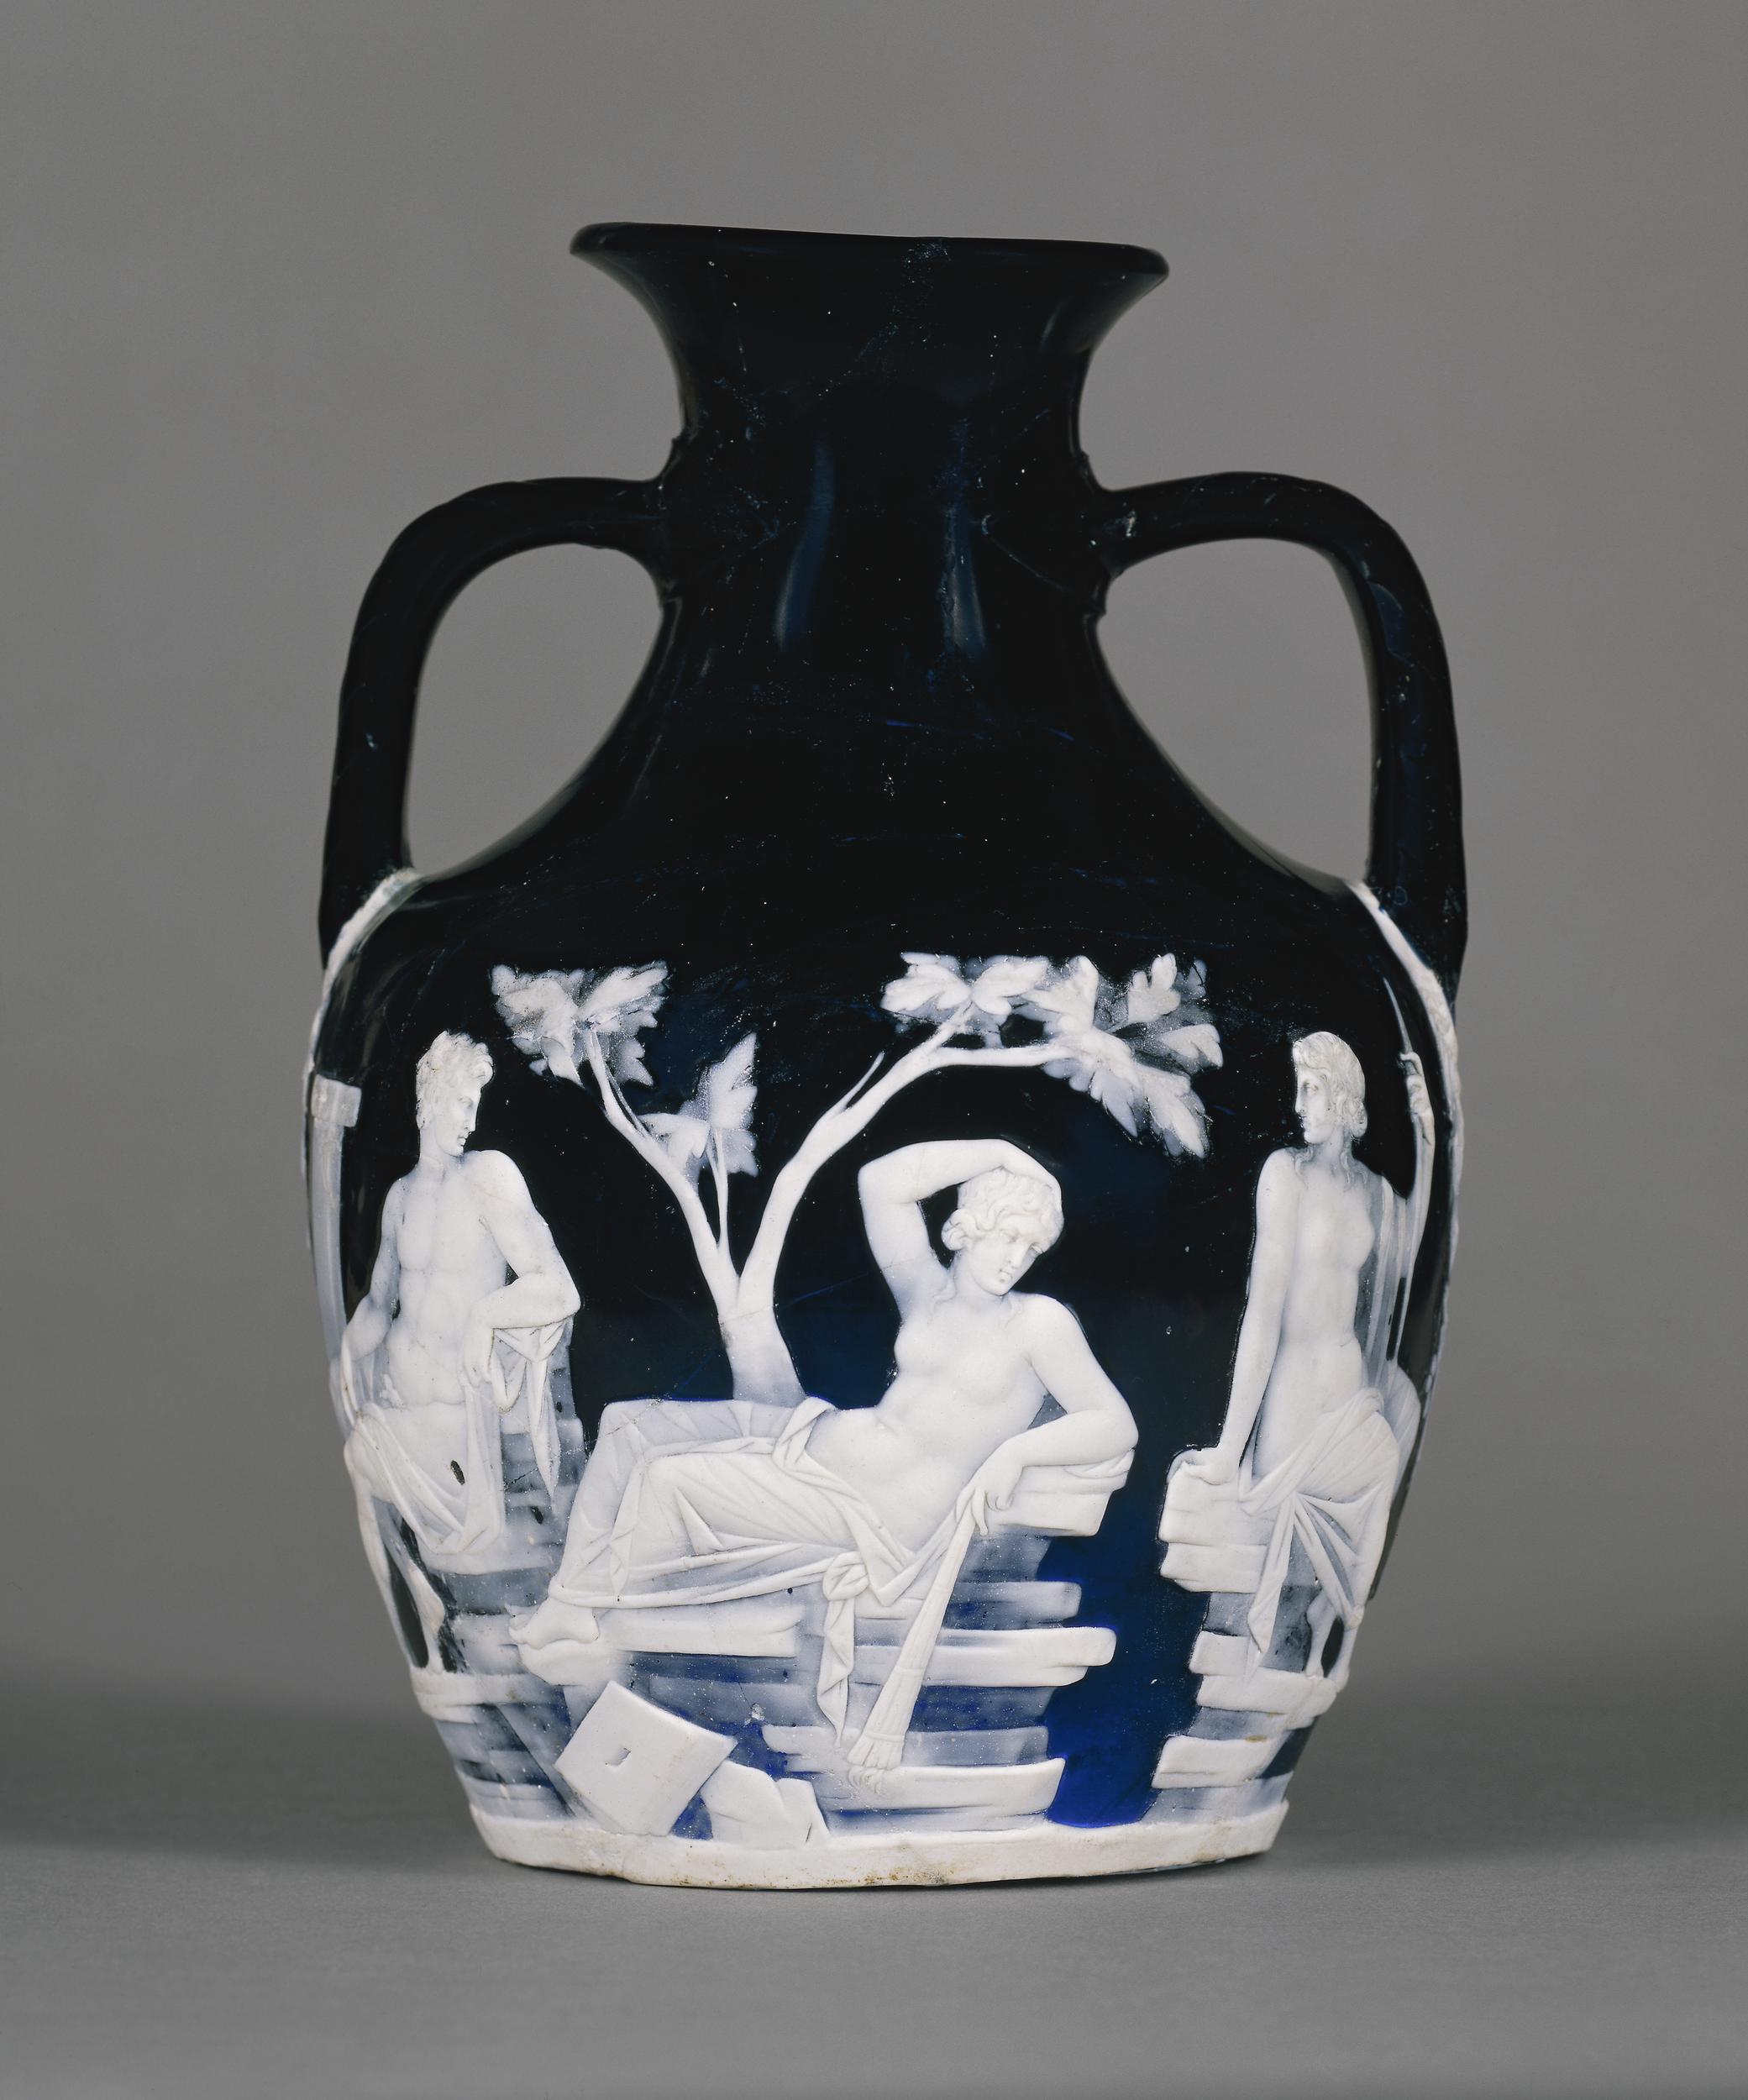 Portland Vase, c. 1–25 C.E., glass, 24 x 17 cm (© Trustees of the British Museum)